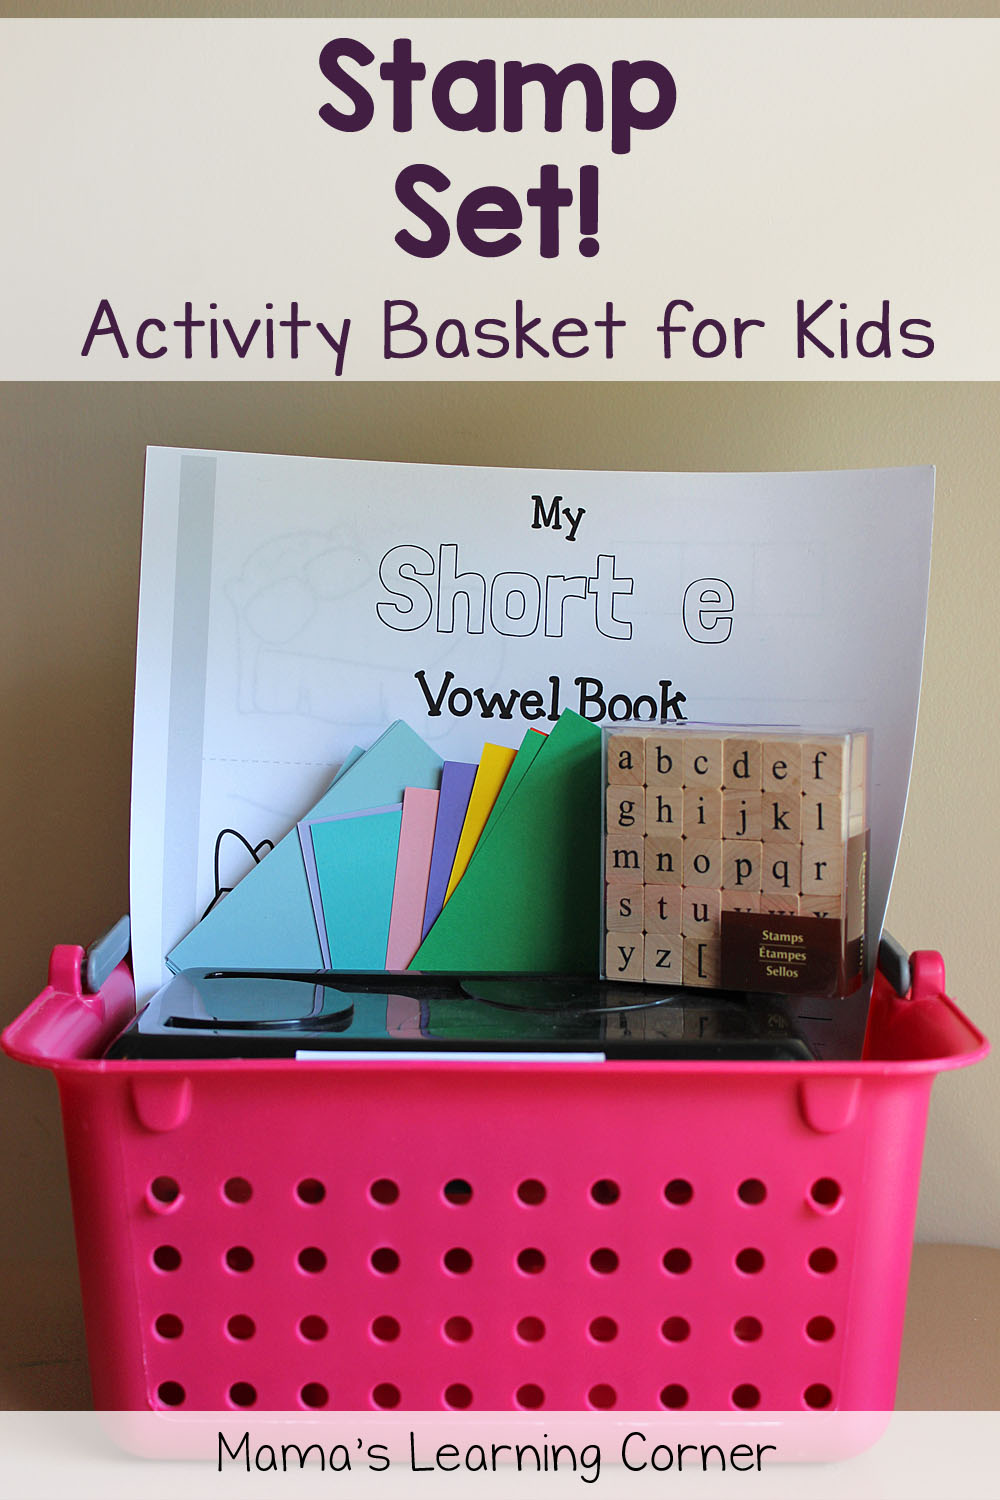 Activity Basket for Kids: Stamp Set! - Mamas Learning Corner